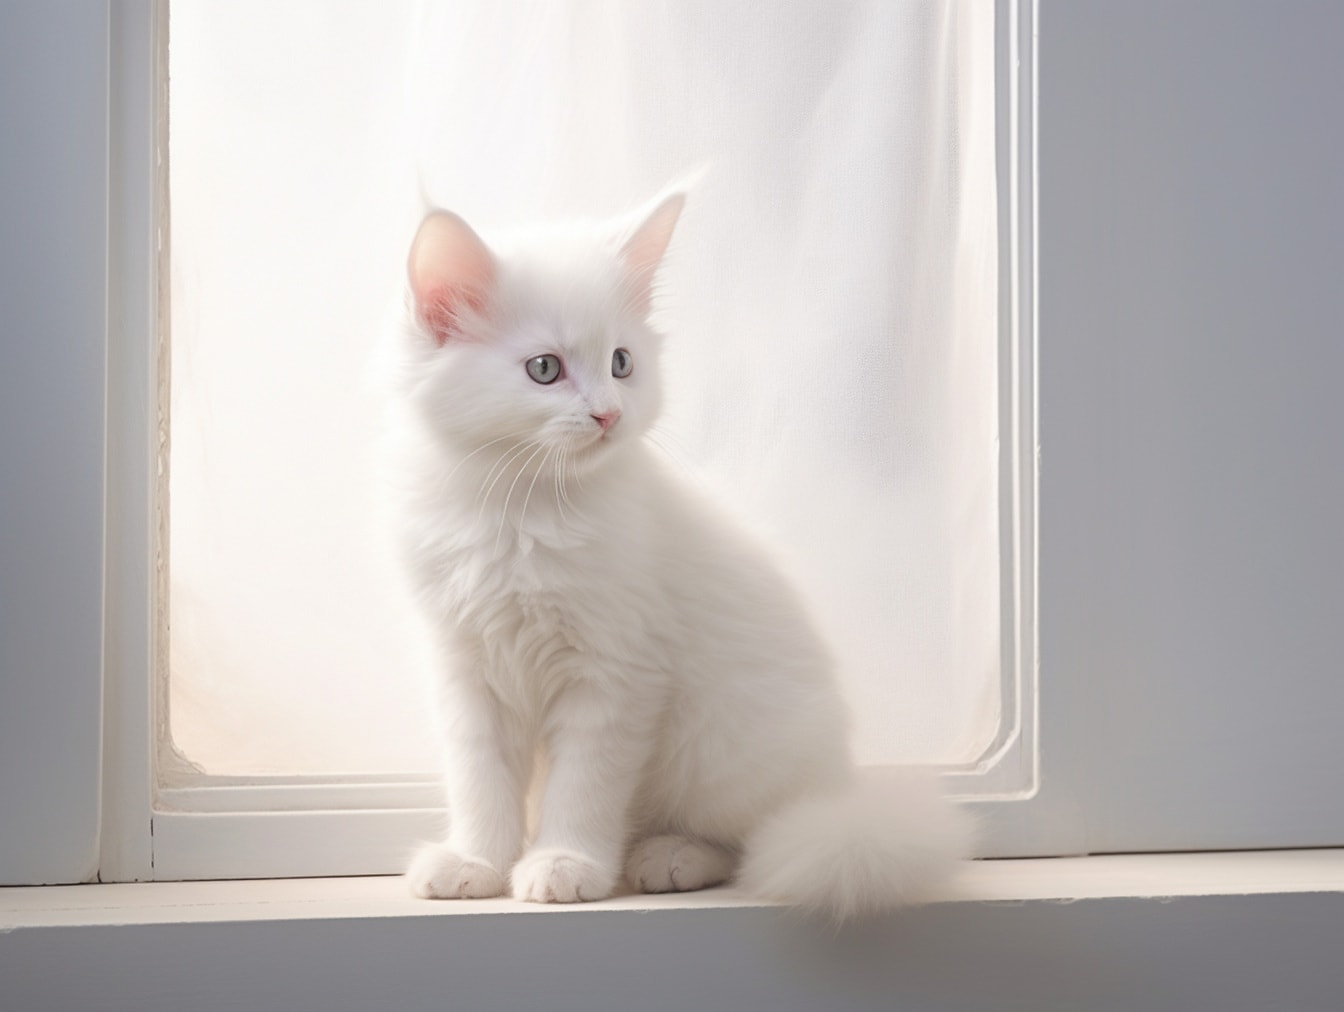 Ilustrasi anak kucing putih murni duduk di dekat jendela